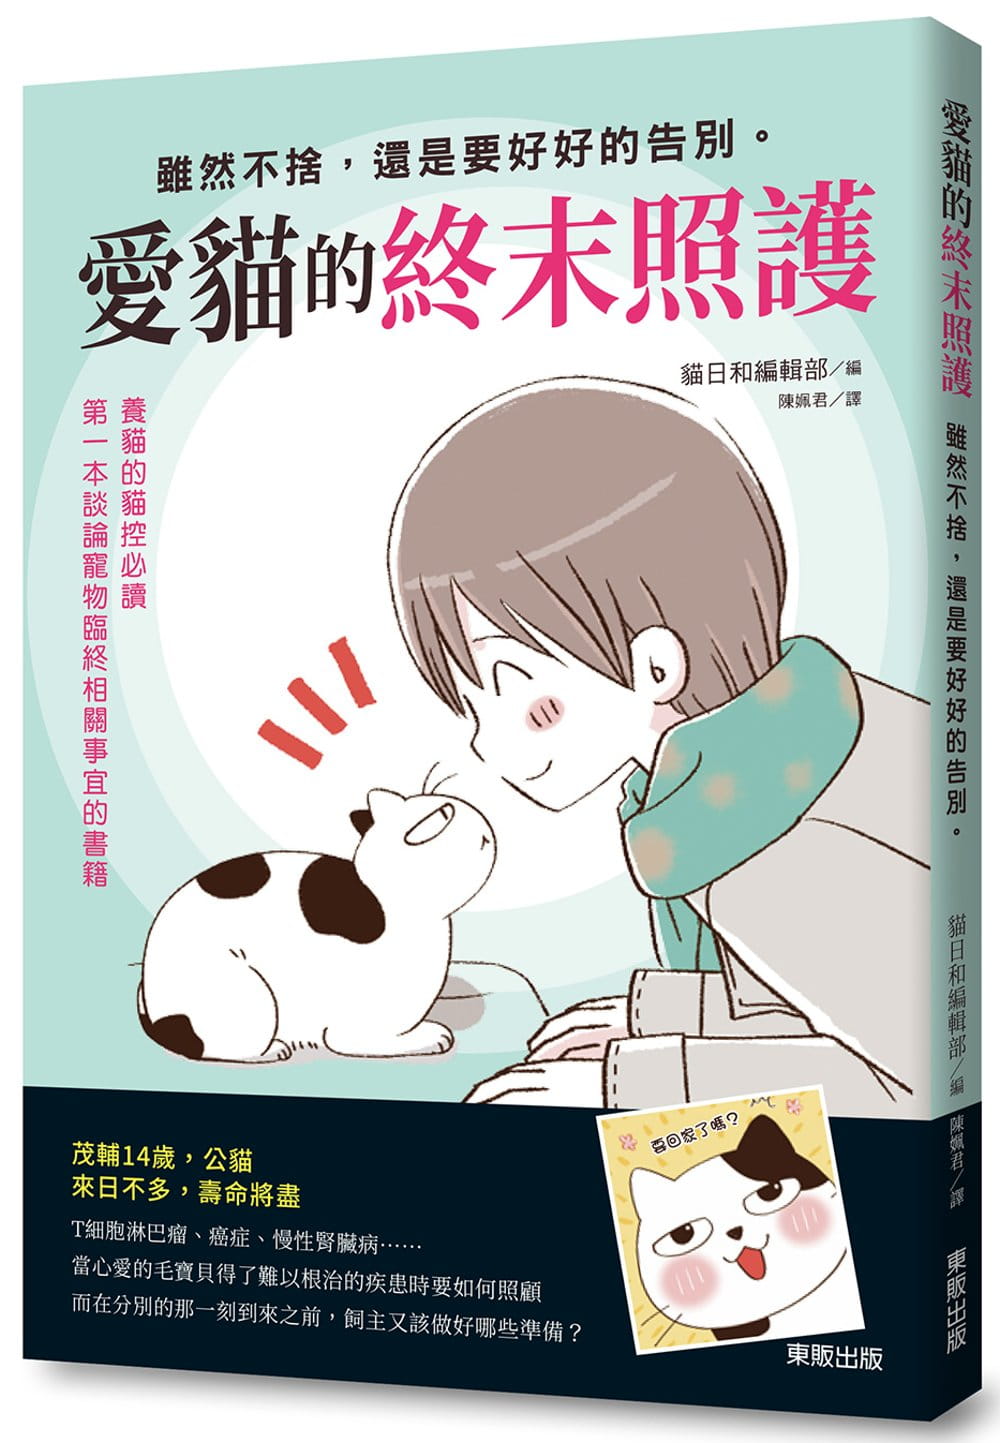 预售正版 原版进口图书 猫日和编辑部爱猫的终末照护虽然不舍 还是要好好的告别。台湾东贩 生活风格